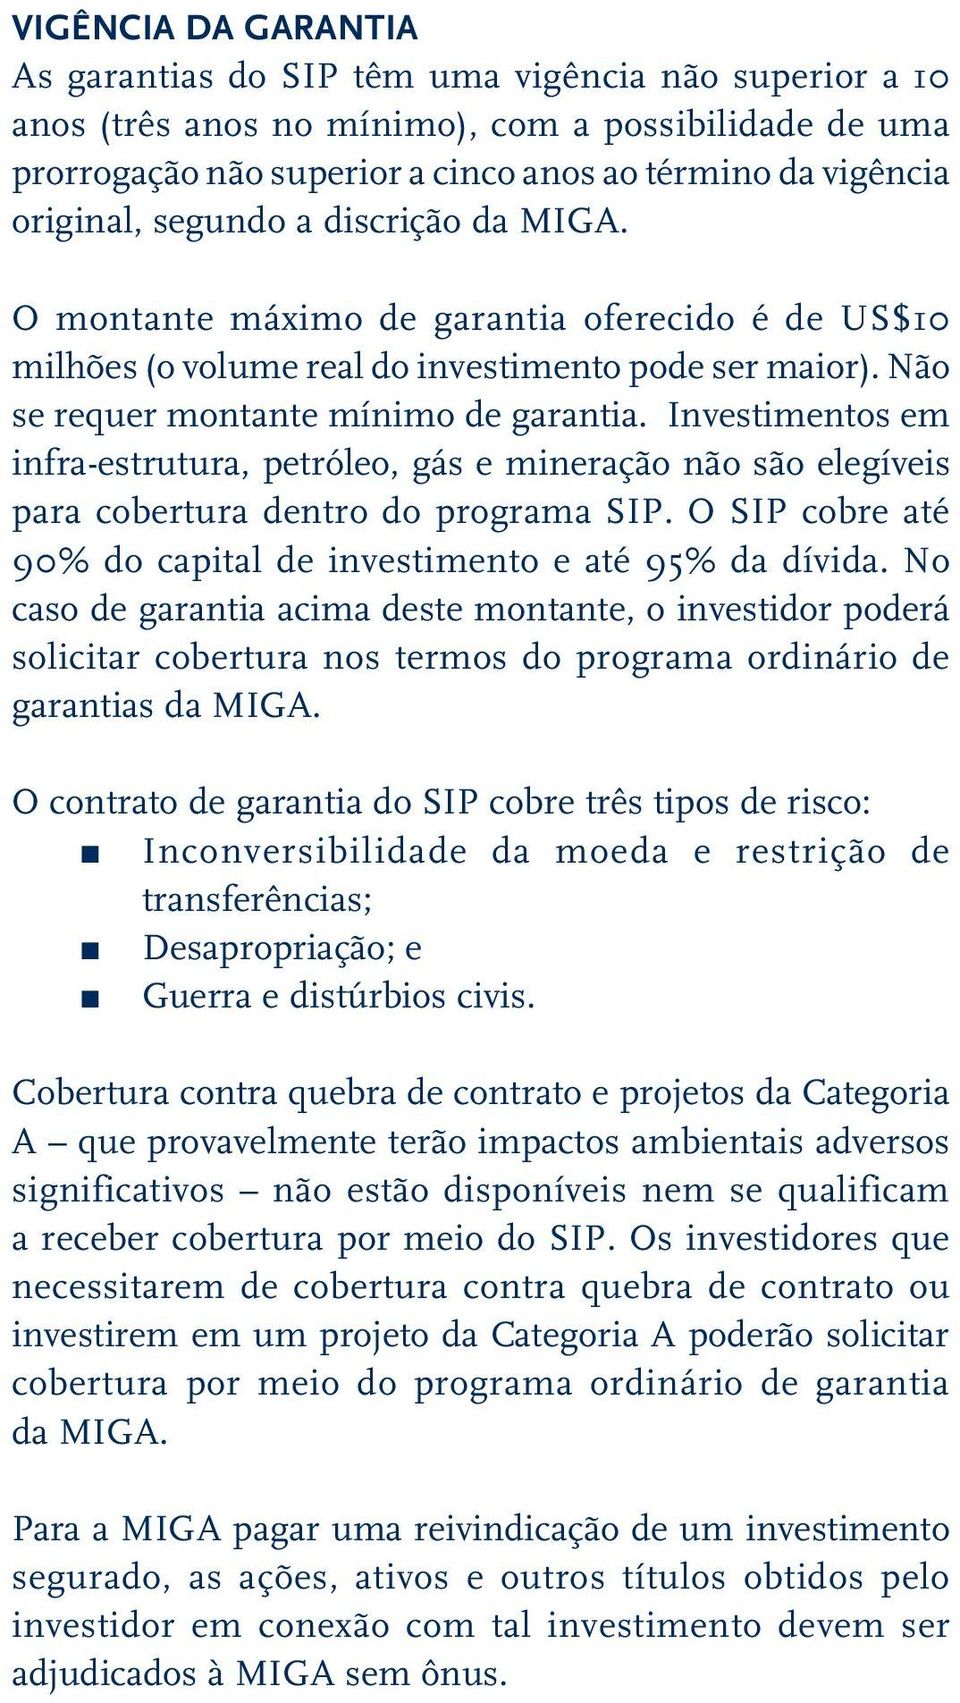 Investimentos em infra-estrutura, petróleo, gás e mineração não são elegíveis para cobertura dentro do programa SIP. O SIP cobre até 90% do capital de investimento e até 95% da dívida.